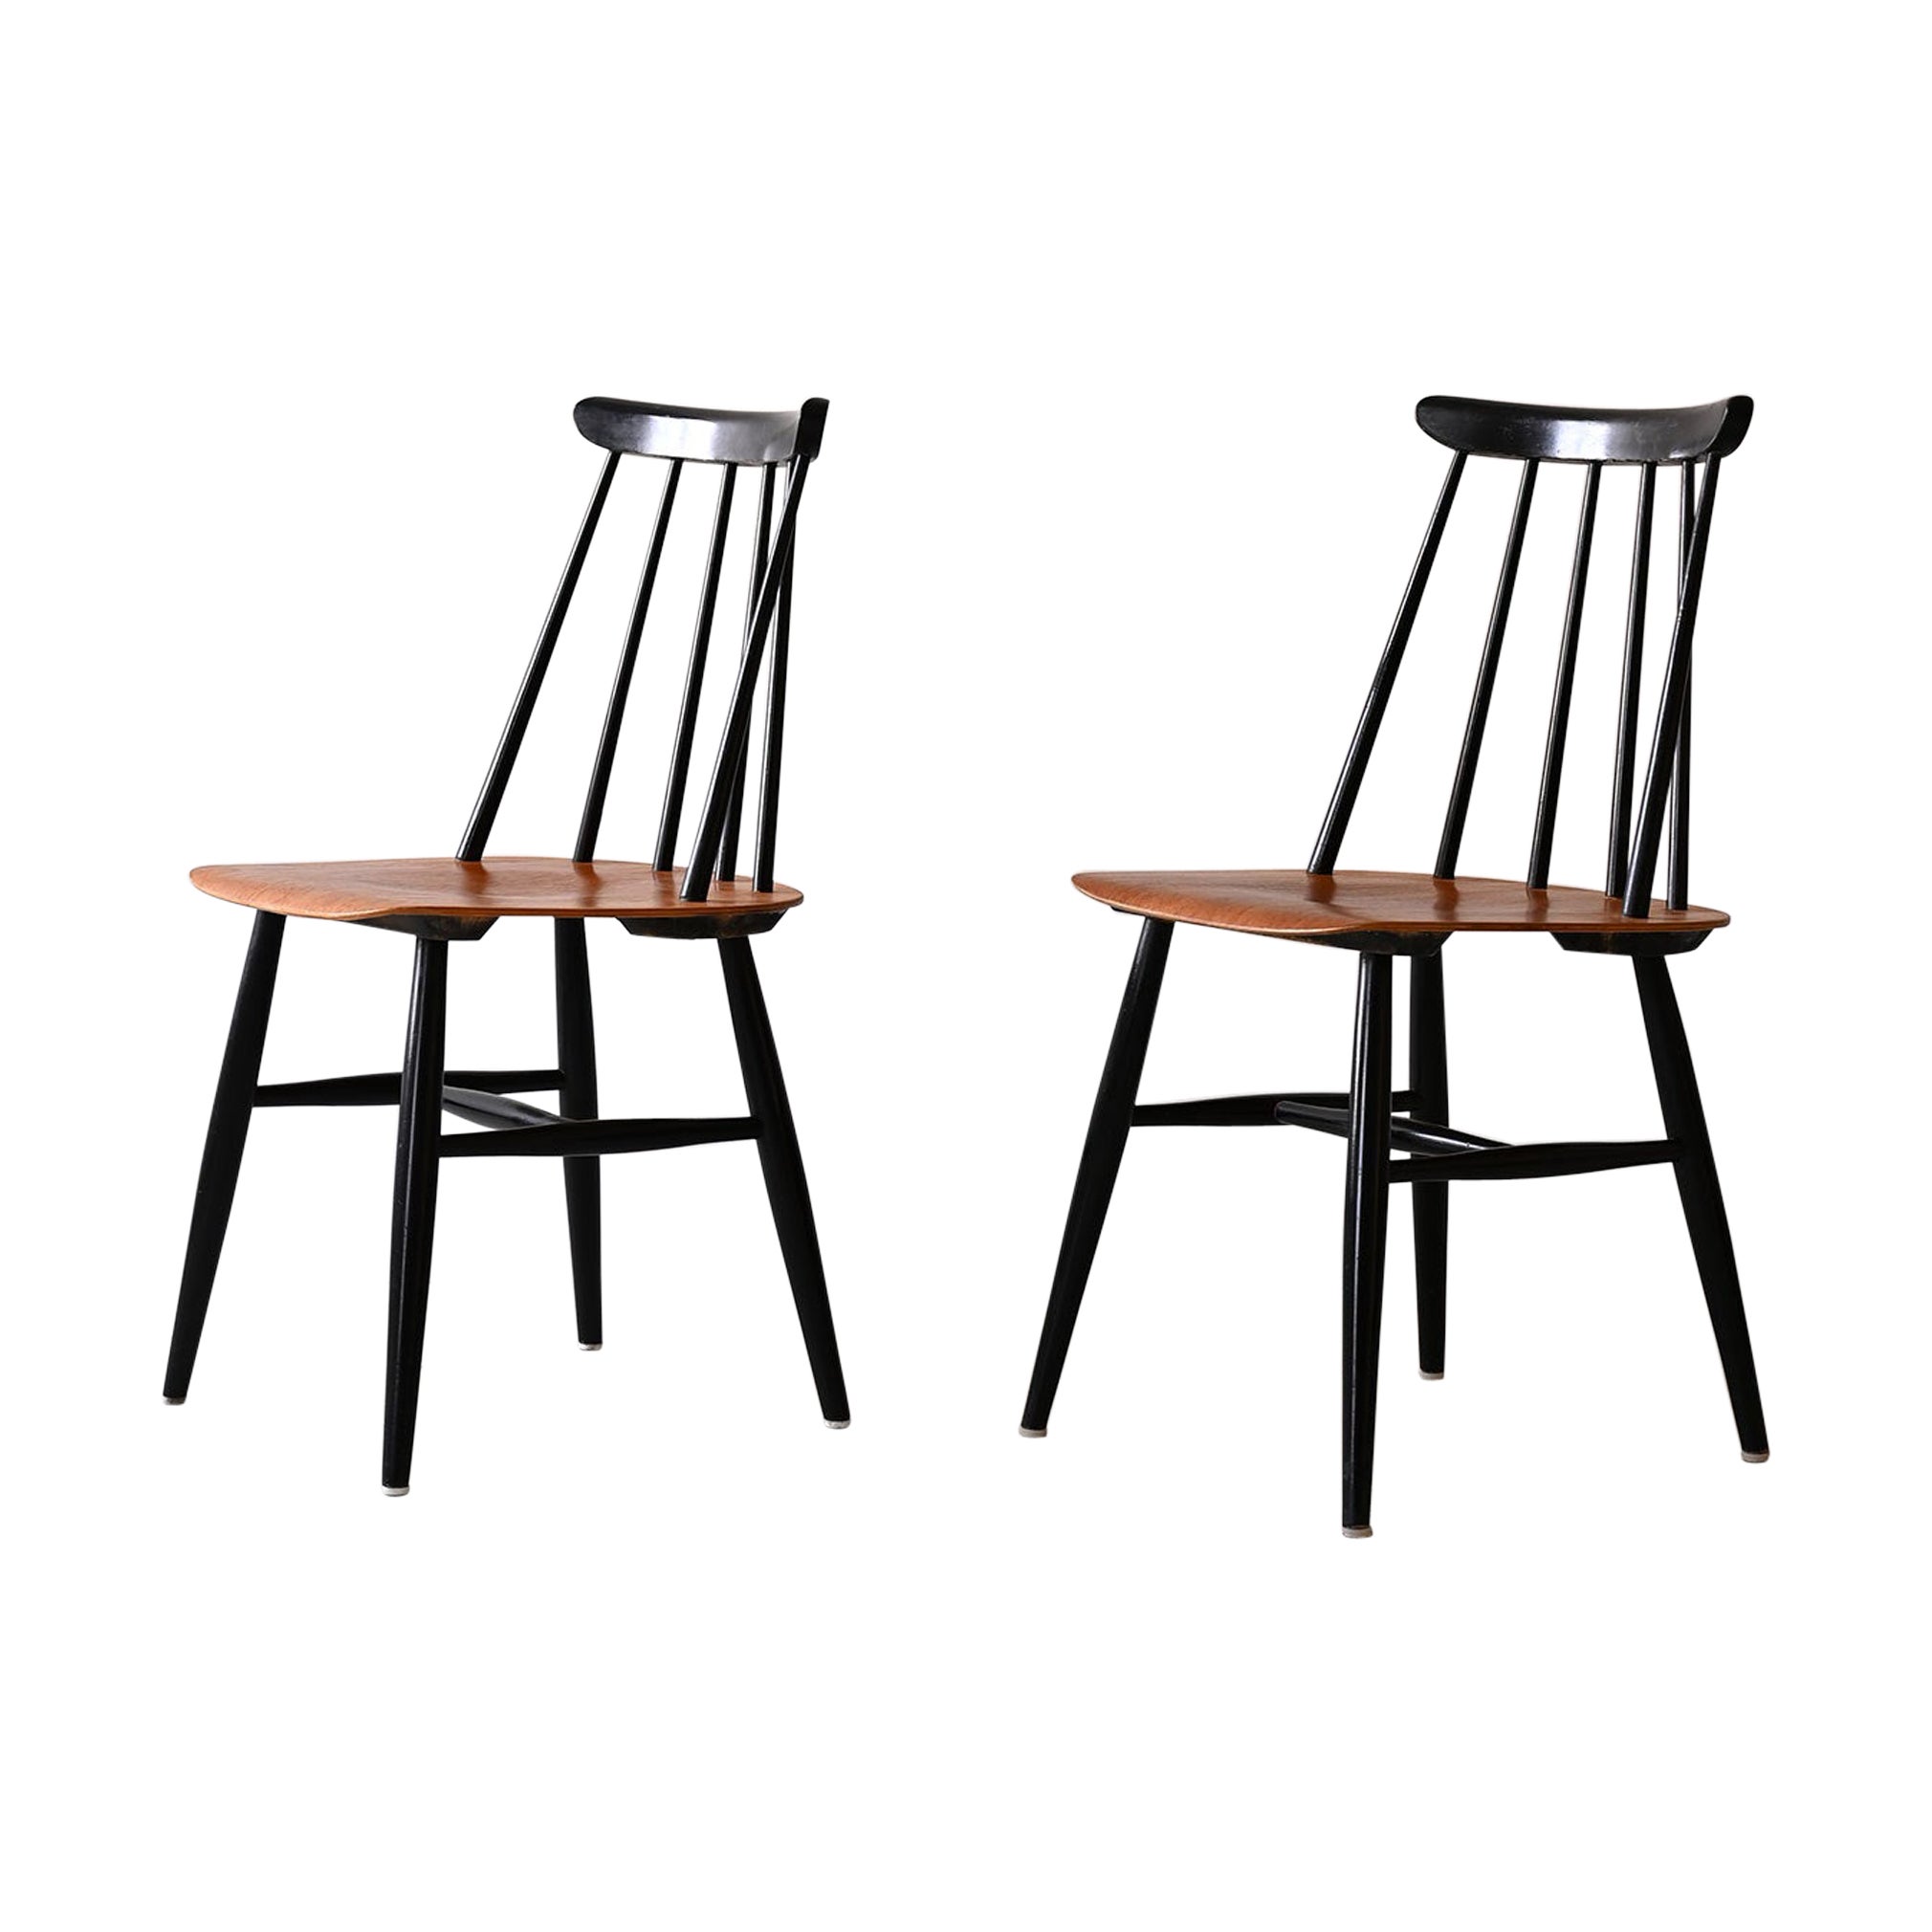 Paire de chaises conçues par Ilmari Tapiovaaraa, modèle Fanett